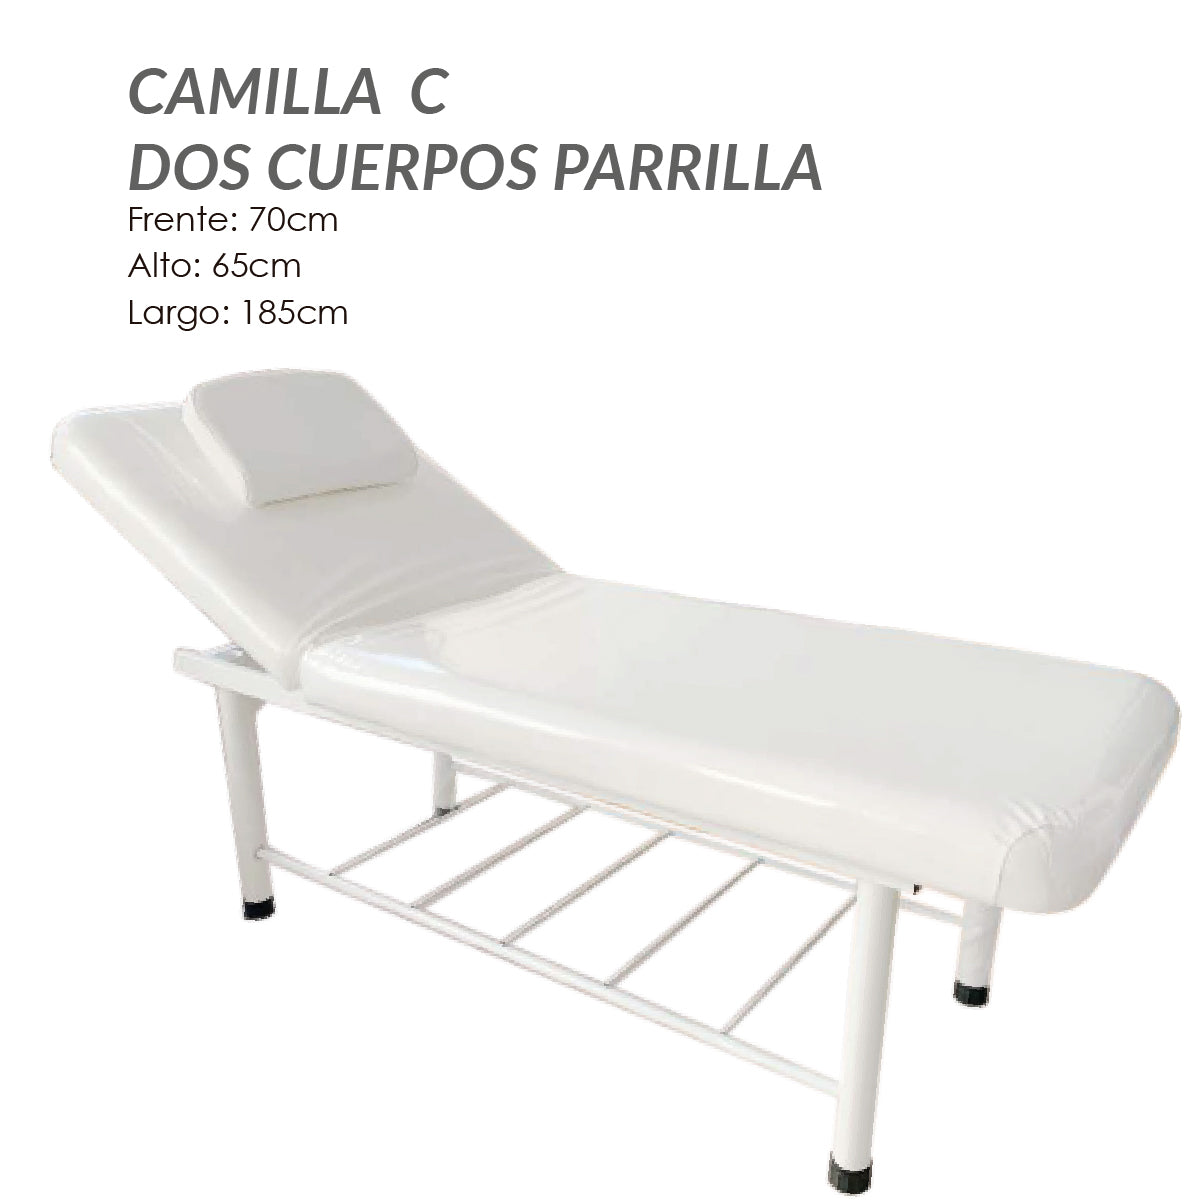 Camilla C Dos Cuerpos Parrilla